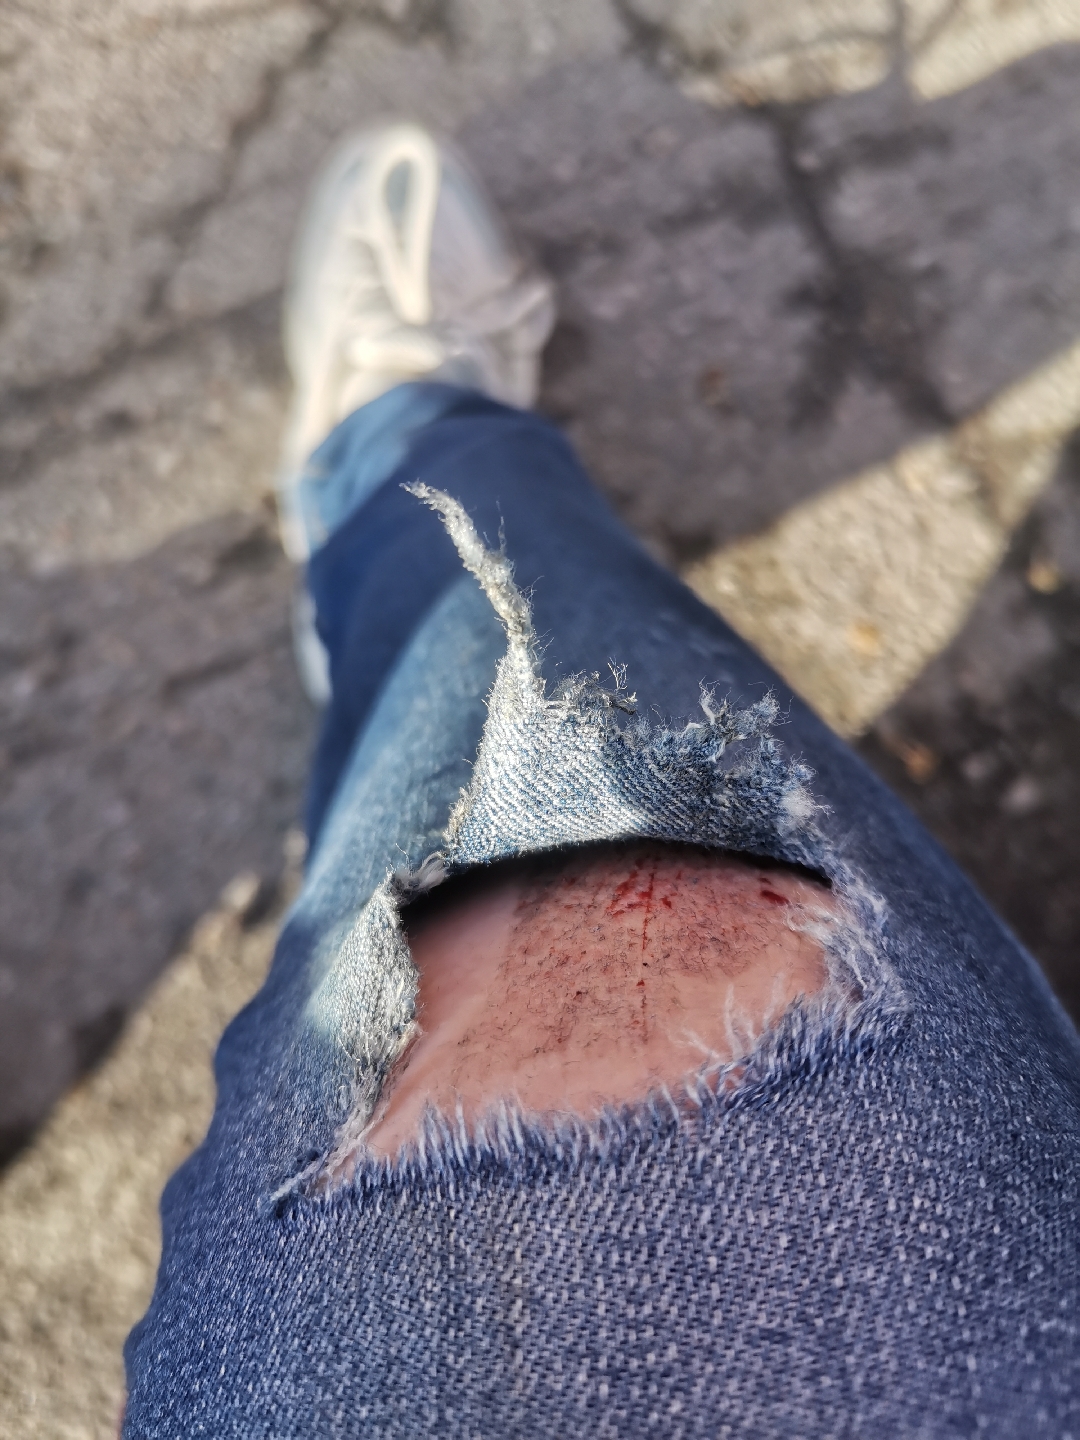 骑车裤子摔坏的照片图片